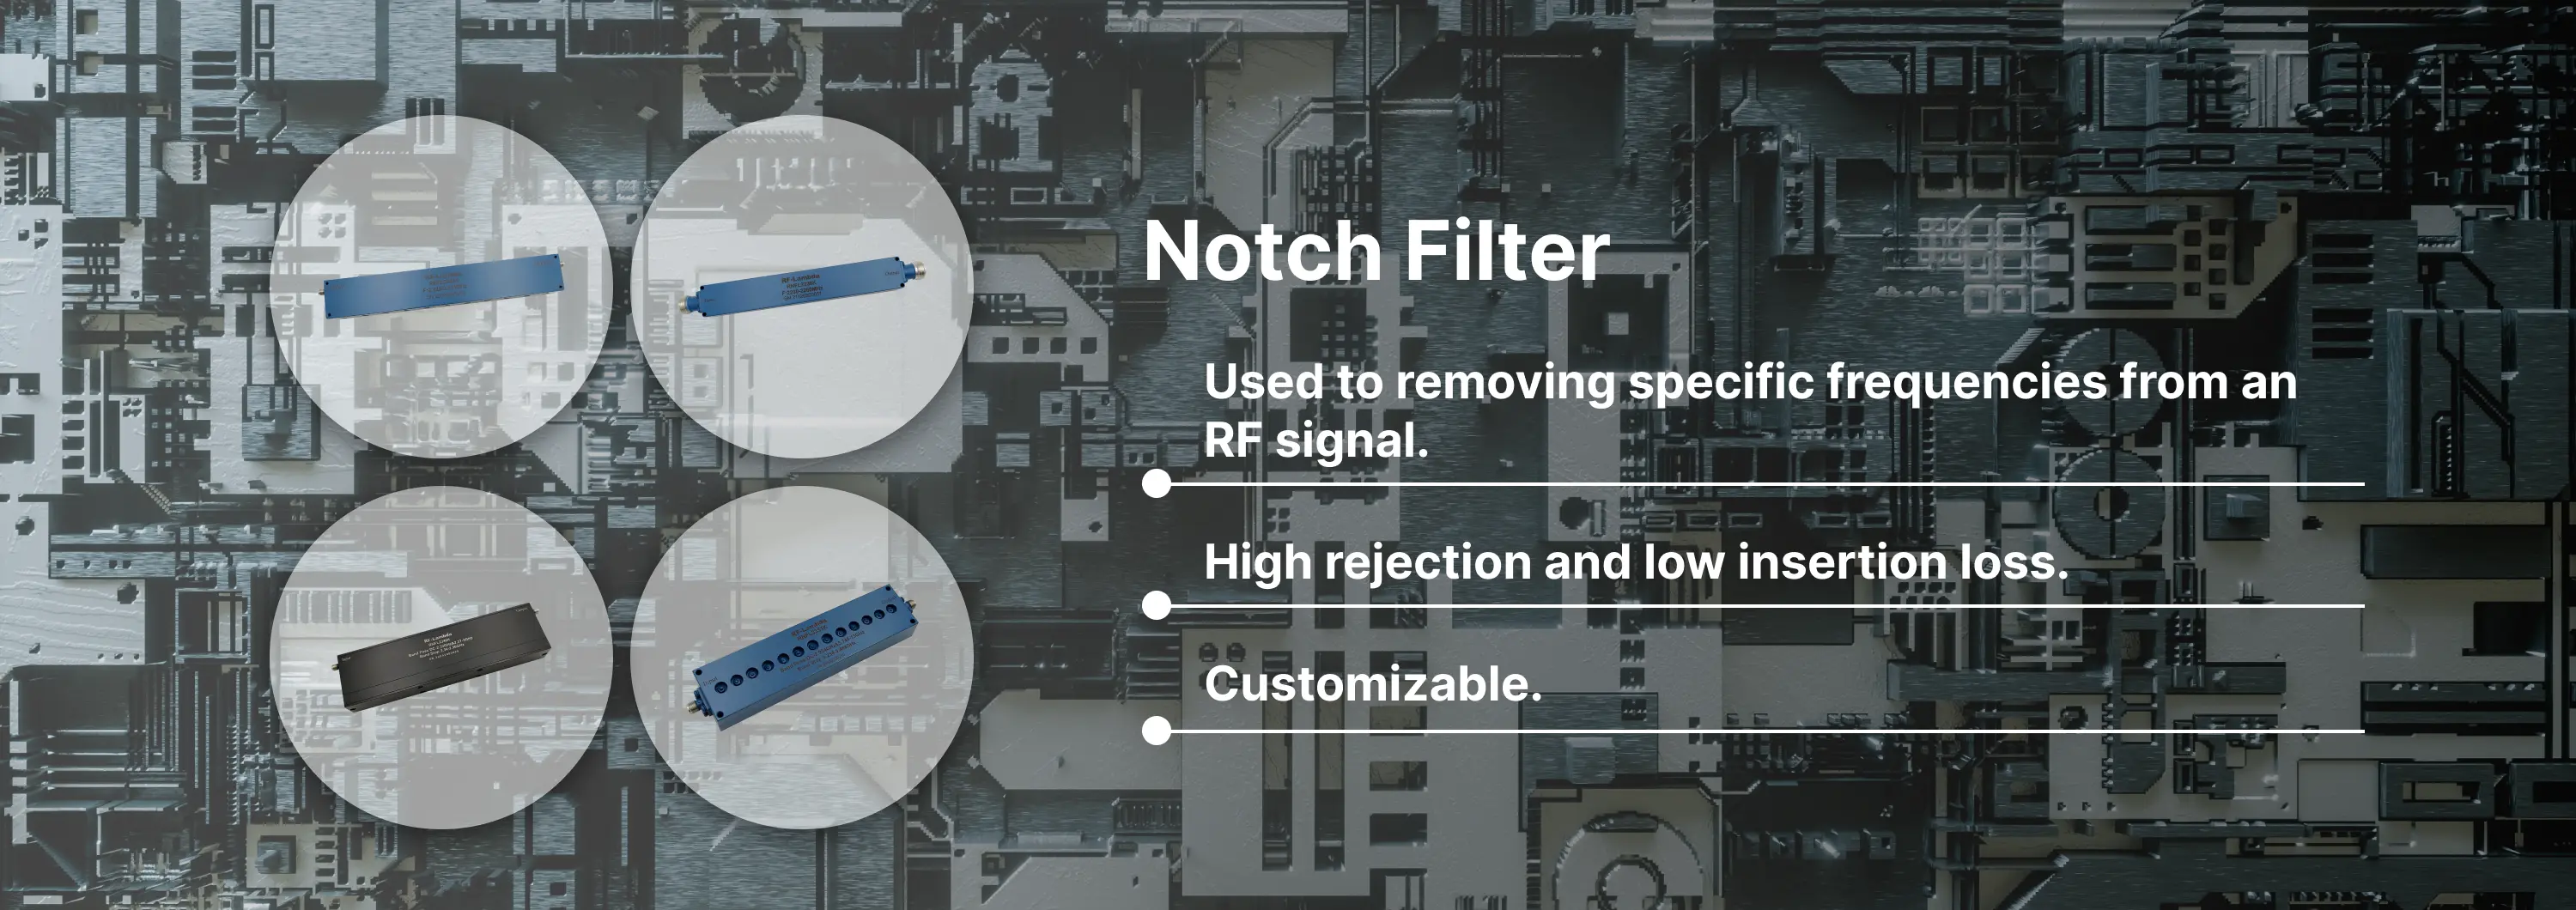 Notch Filter Banner